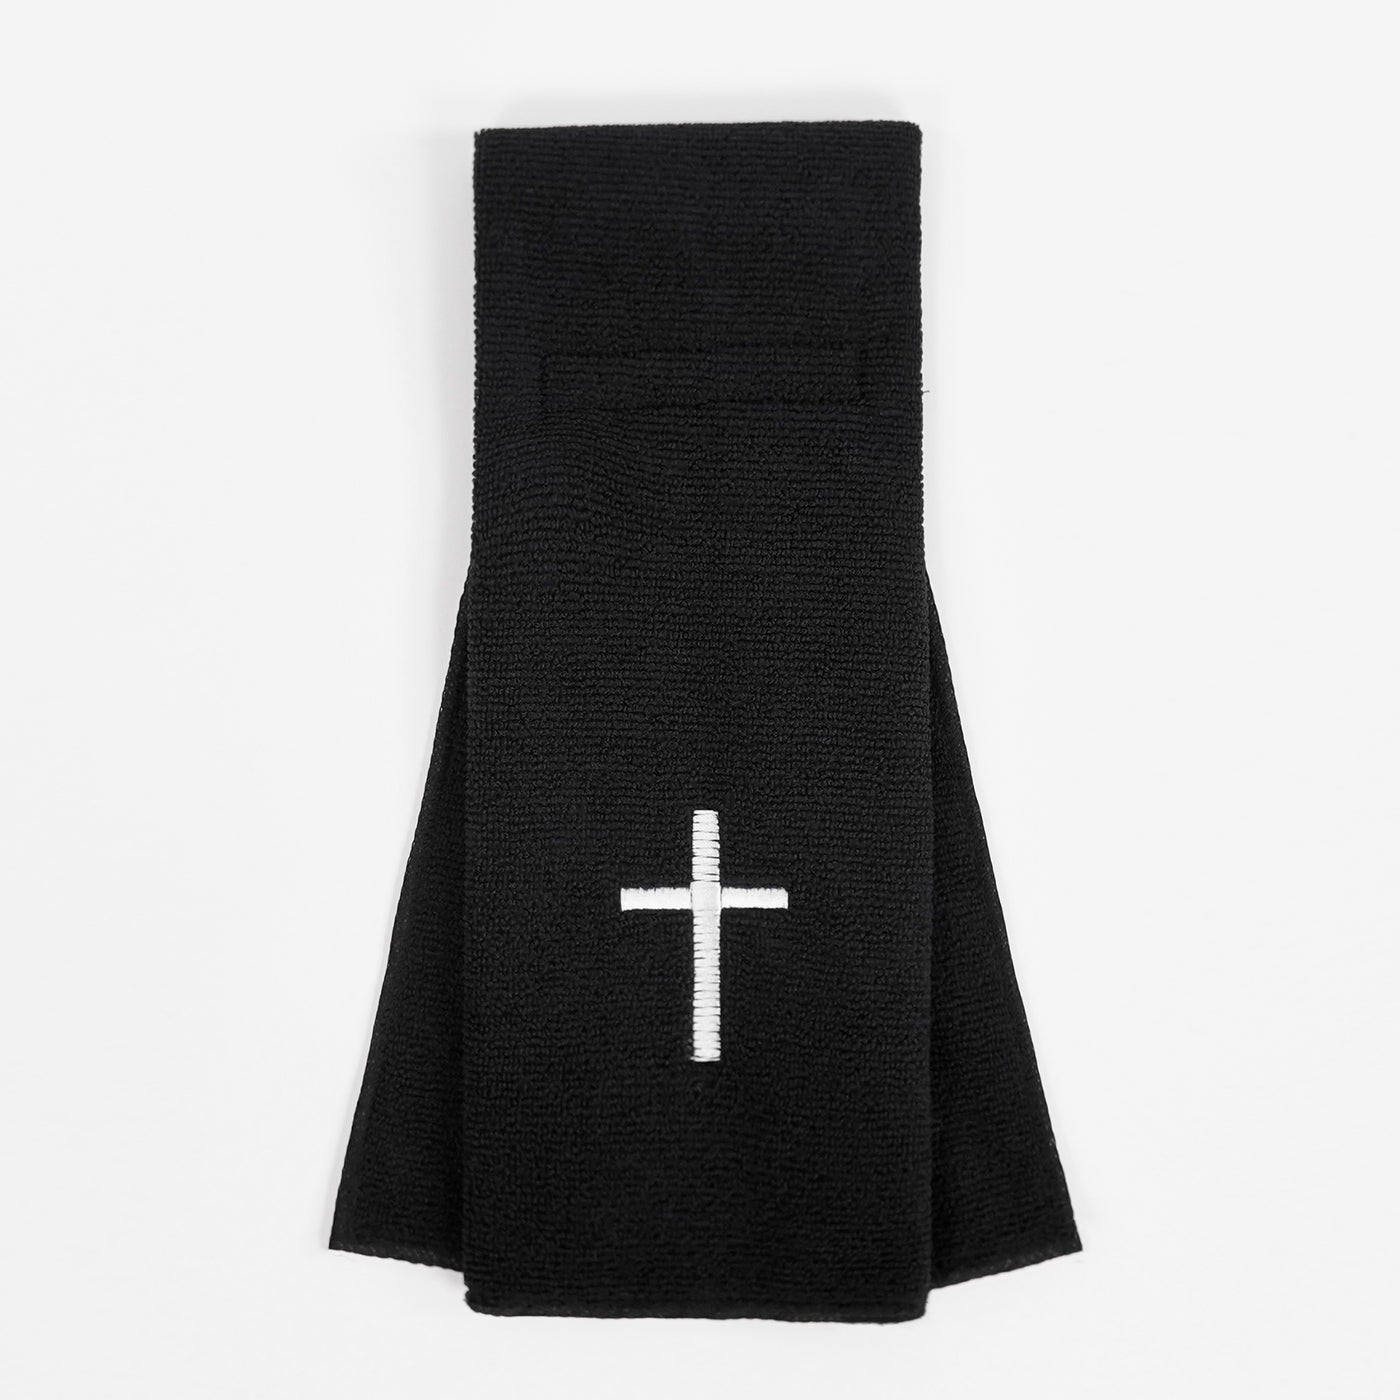 Faith Cross Black Football Towel